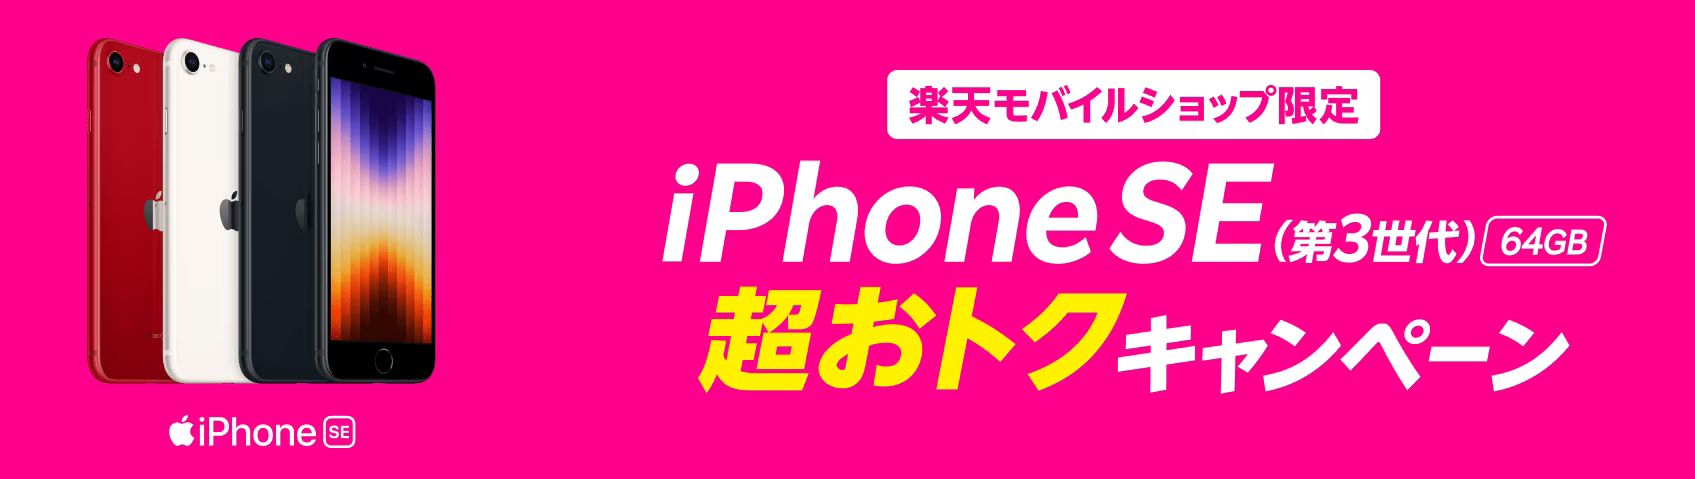 【ショップ限定】iPhoneSE(第3世代)64GB 実質1円キャンペーン